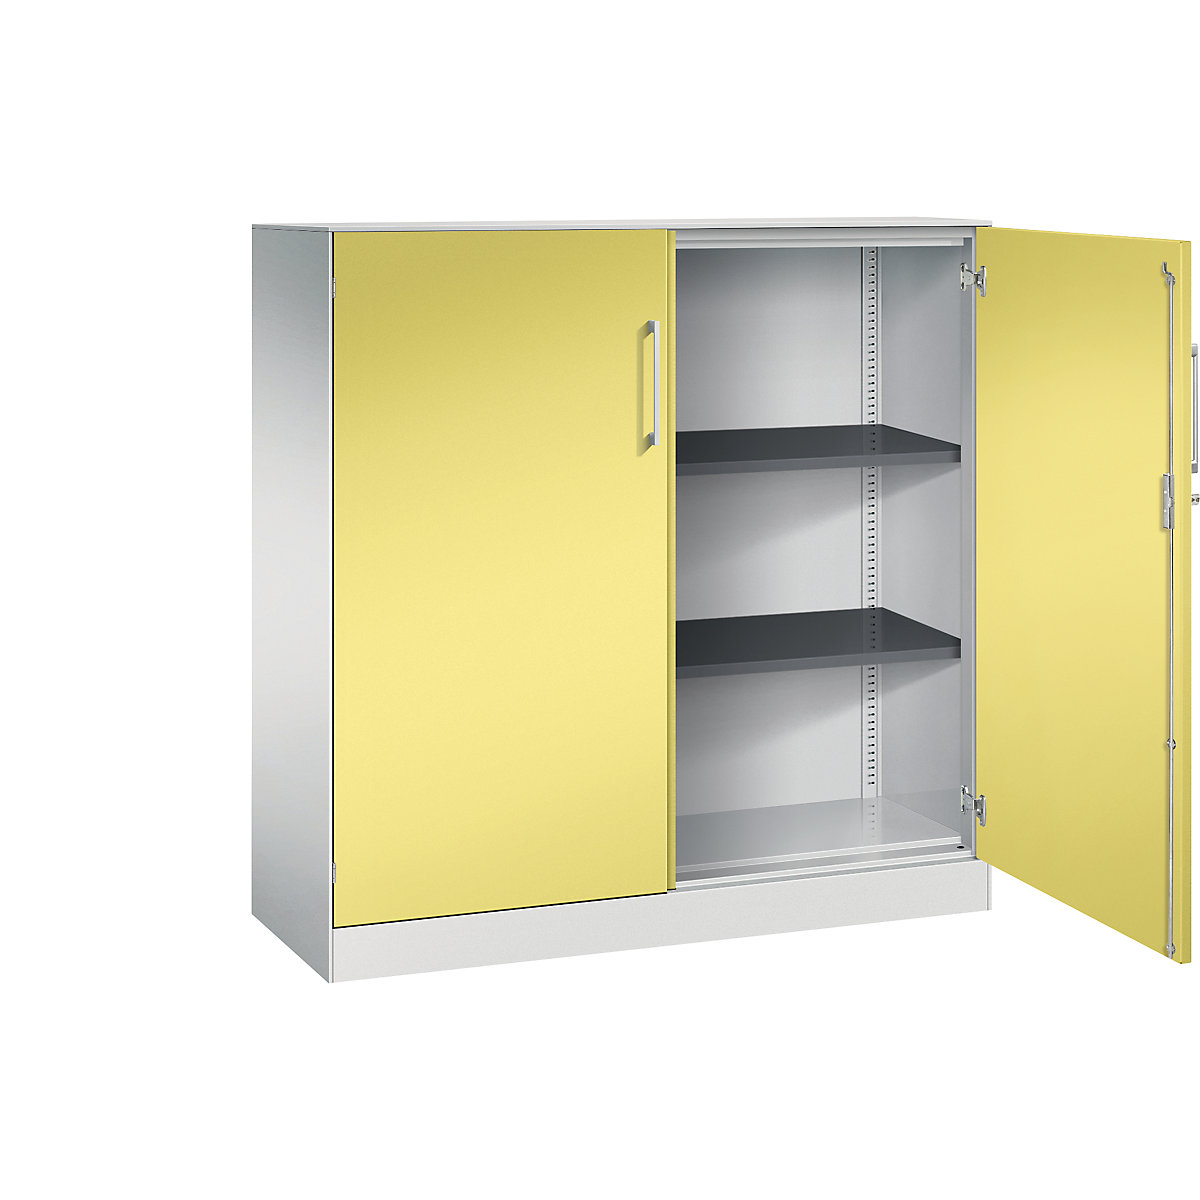 C+P – Skříň s otočnými dveřmi ASISTO, výška 1292 mm, šířka 1200 mm, 2 police, světlá šedá/sírová žlutá